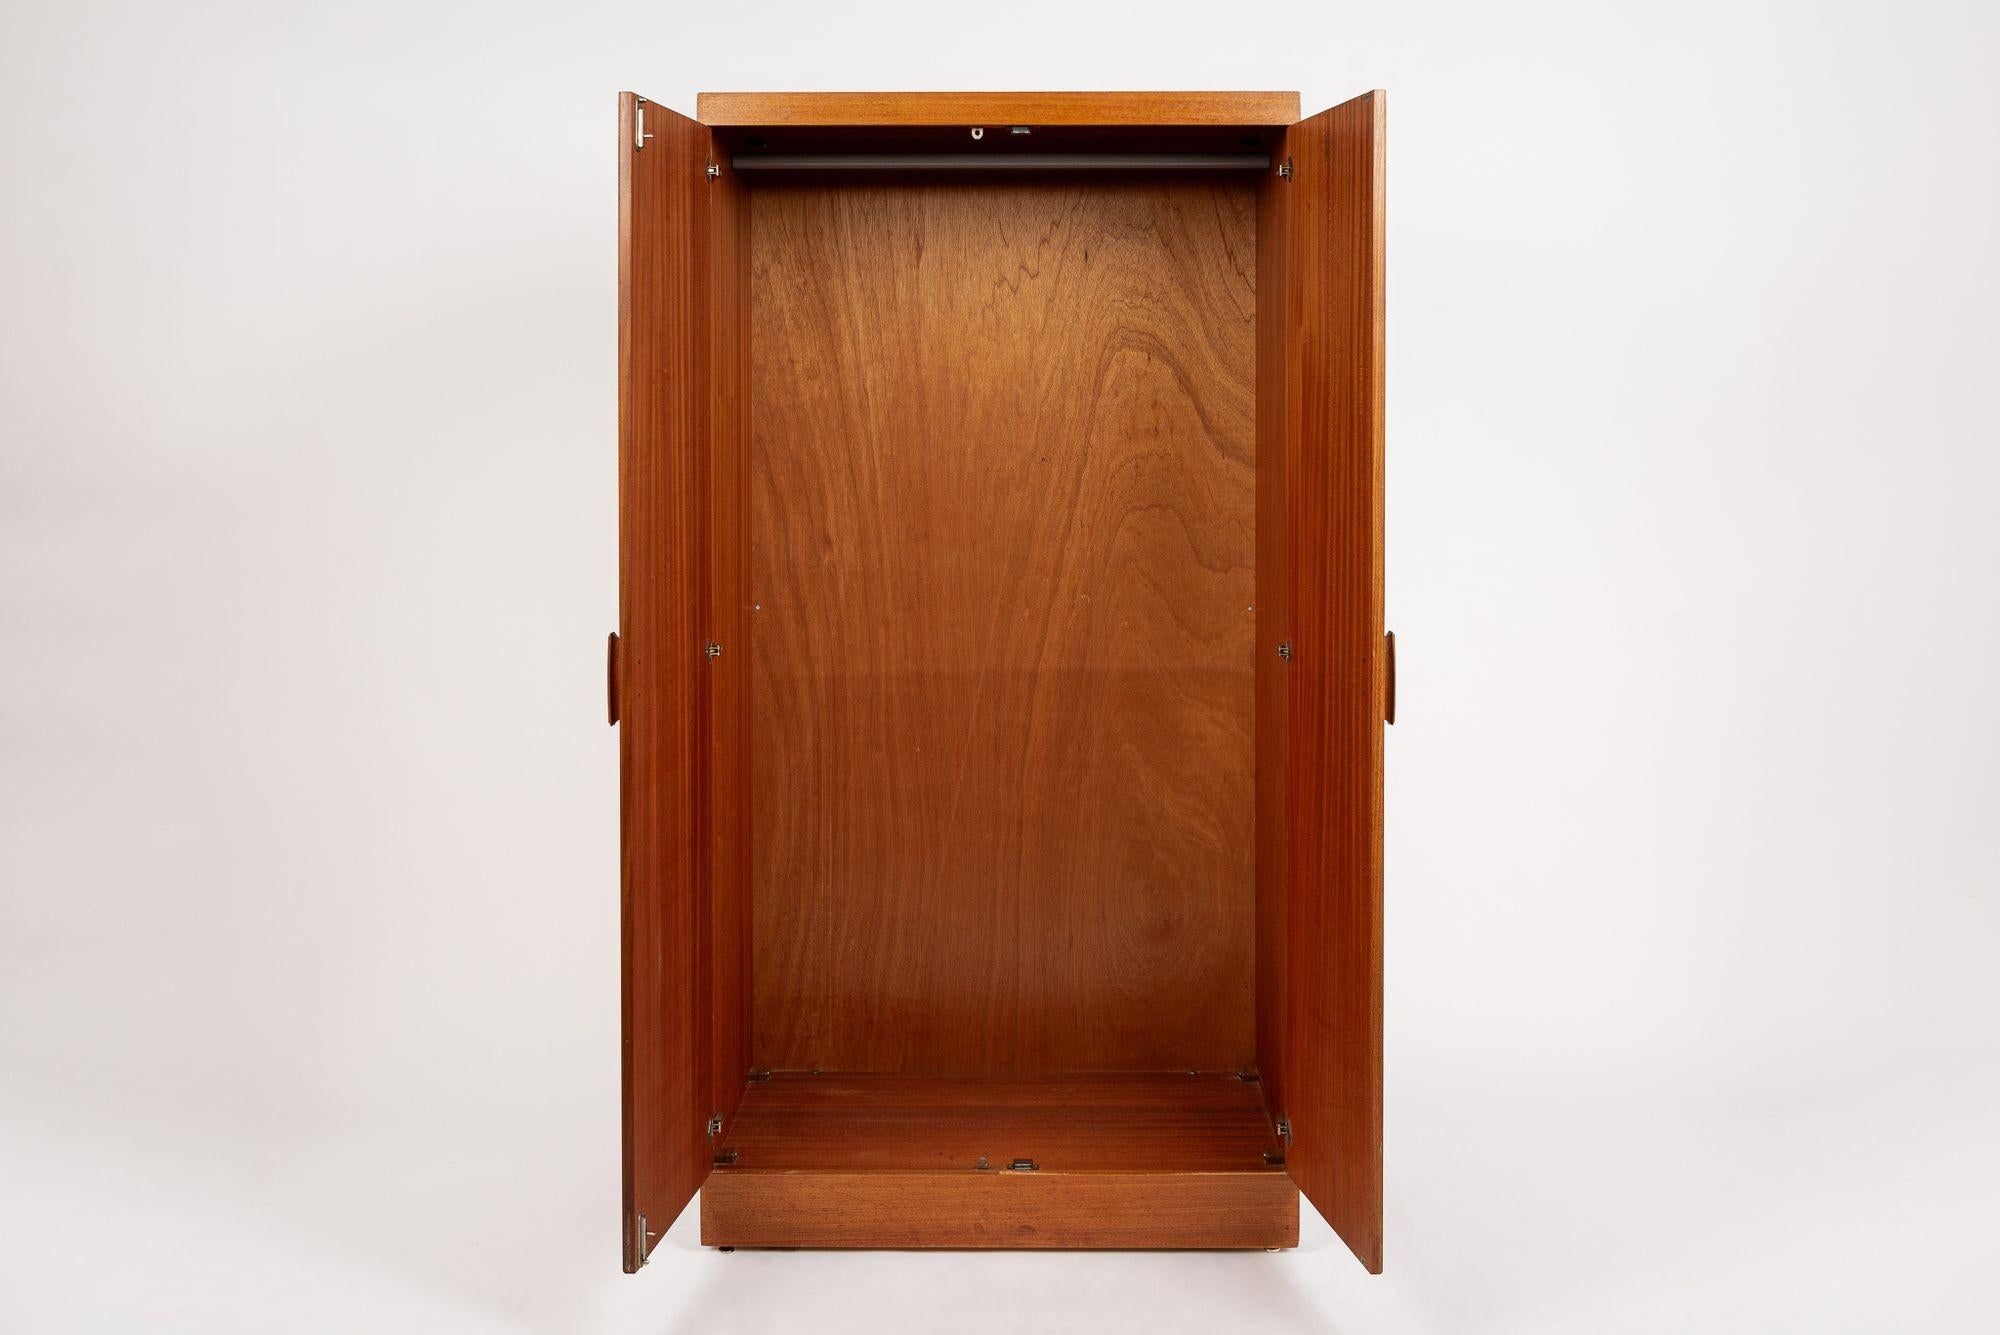 British Mid Century Teak Wood Armoire Wardrobe Cabinet by G-Plan